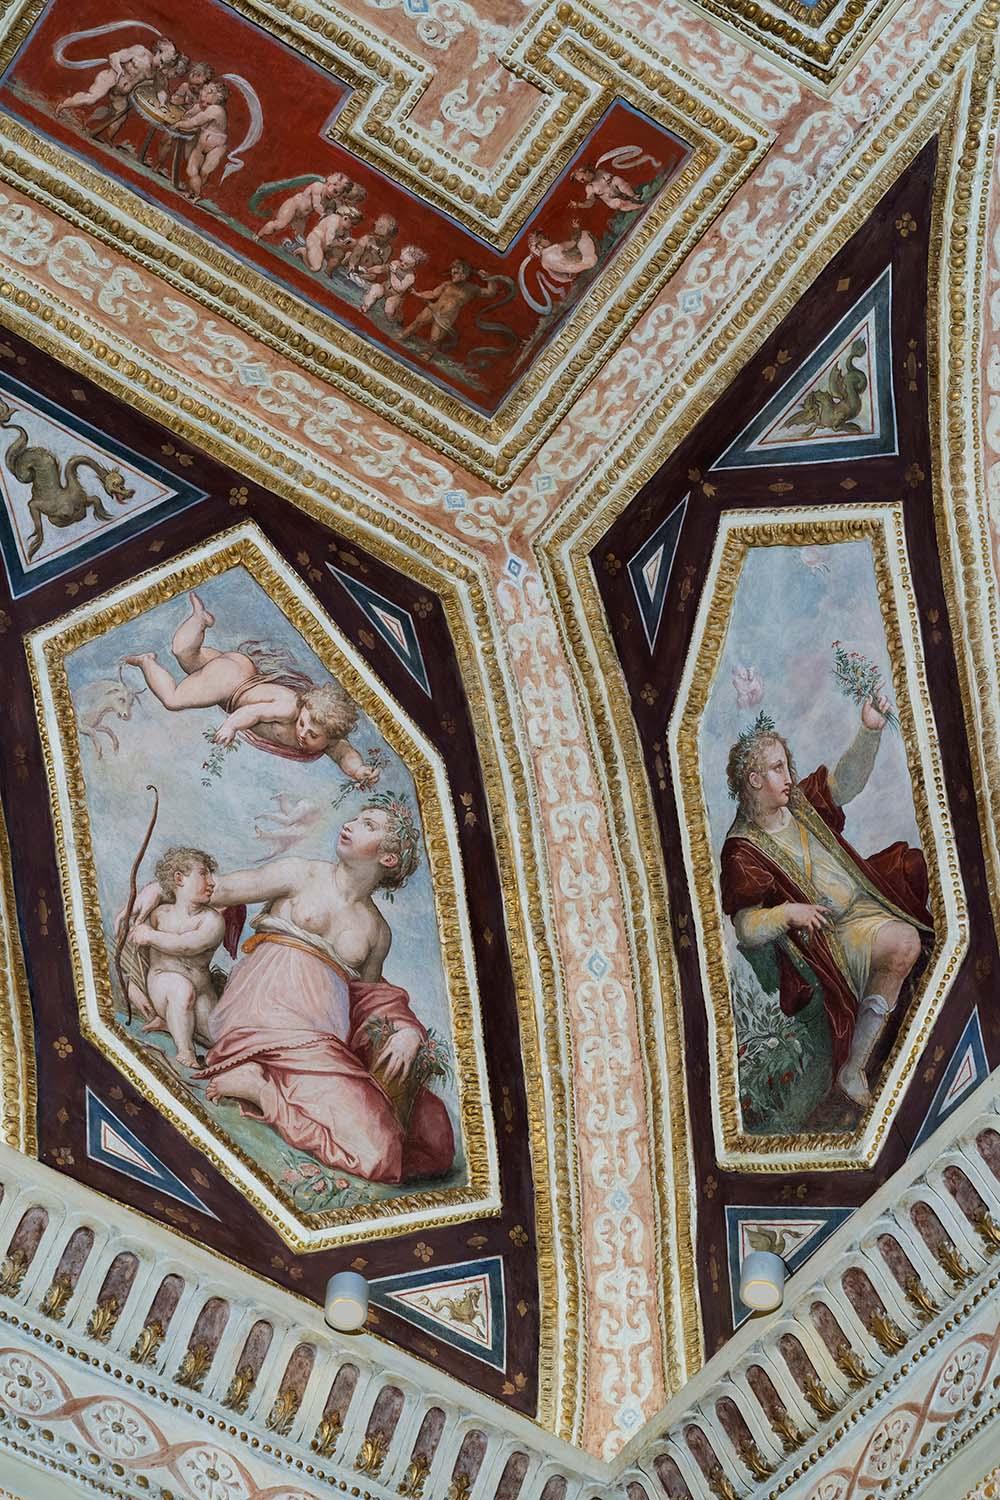 The Altoviti frescoes by Giorgio Vasari